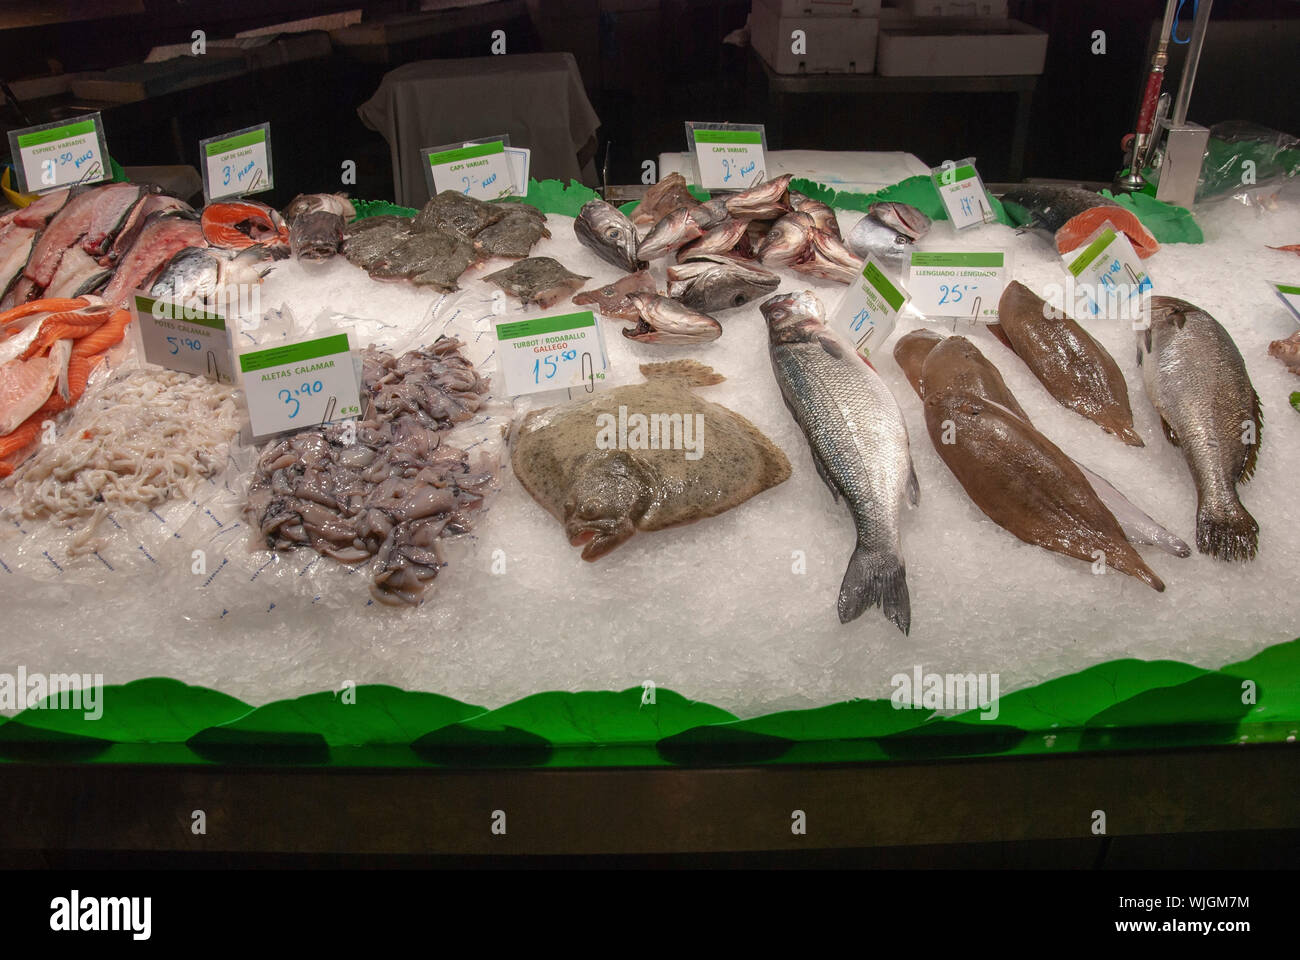 Verschiedene frische Fische angezeigt auf einem Bett aus Eis Tintenfisch  Wolfsbarsch Steinbutt lachs Sohle corbina verschiedene Fischköpfe für  Verkauf auf Anzeige crushed Eis Fisch Stockfotografie - Alamy